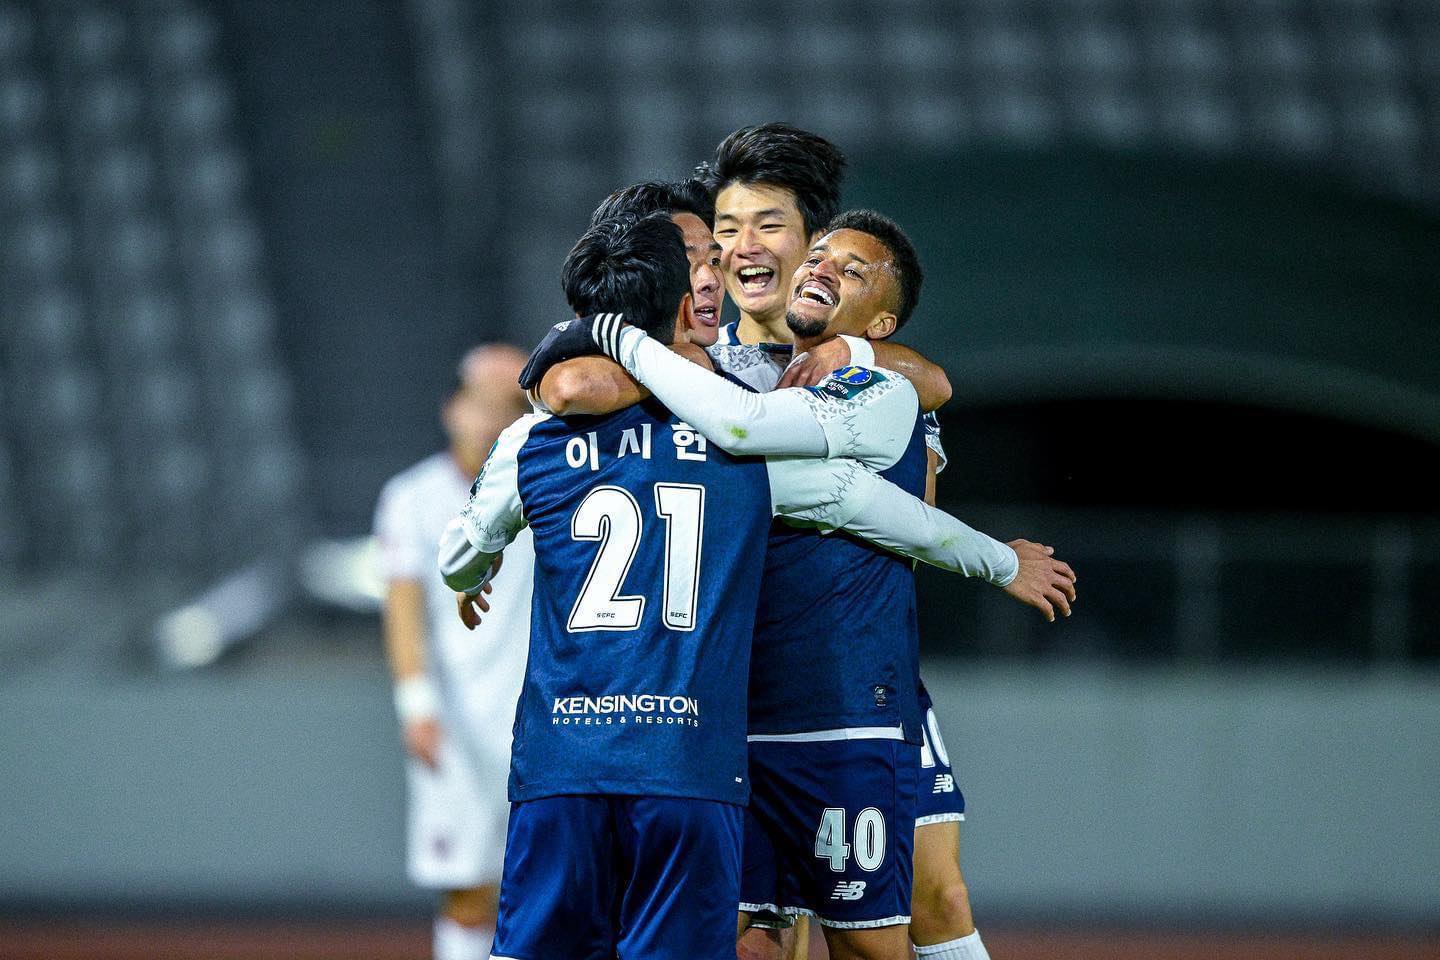 Seoul E-Land của Văn Toàn lần đầu có chiến thắng ở K.League 2 